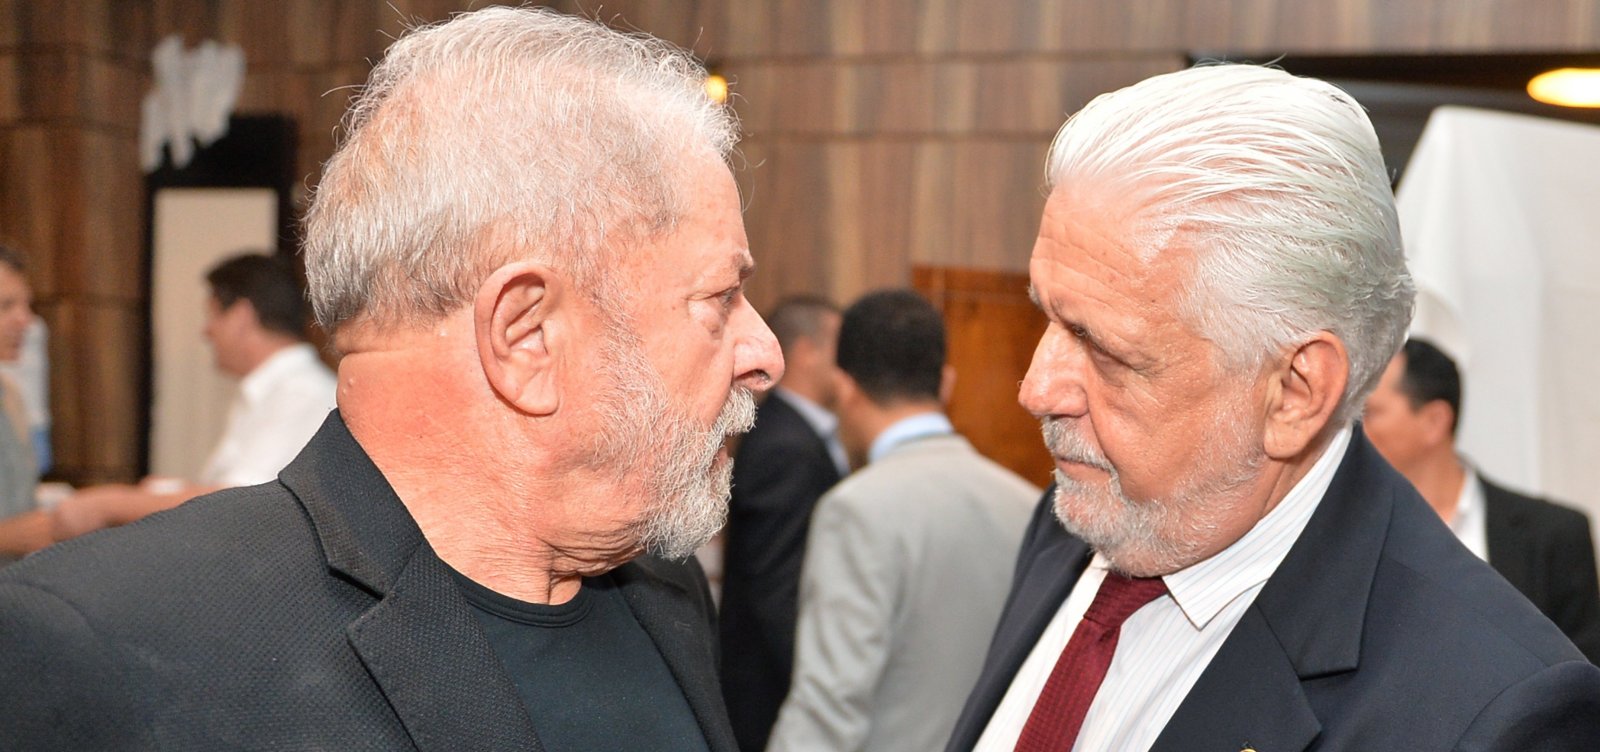 Wagner defende renovação no PT e alfineta Lula: 'Não vou ficar refém dele'  - Metro 1